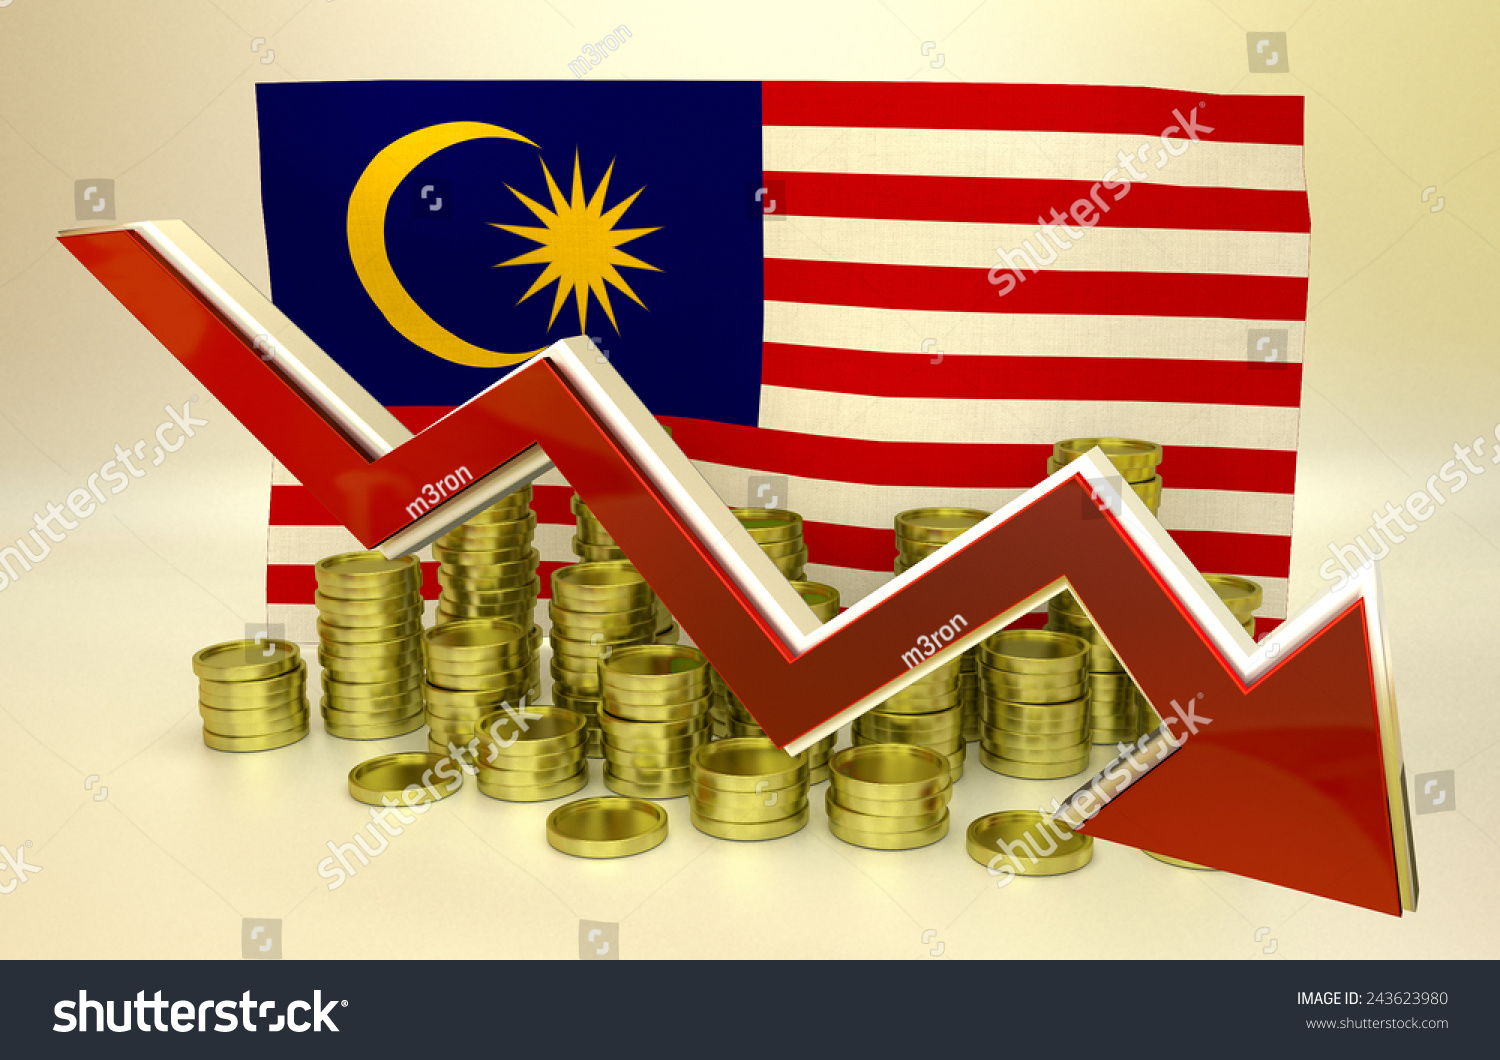 Ввп малайзии